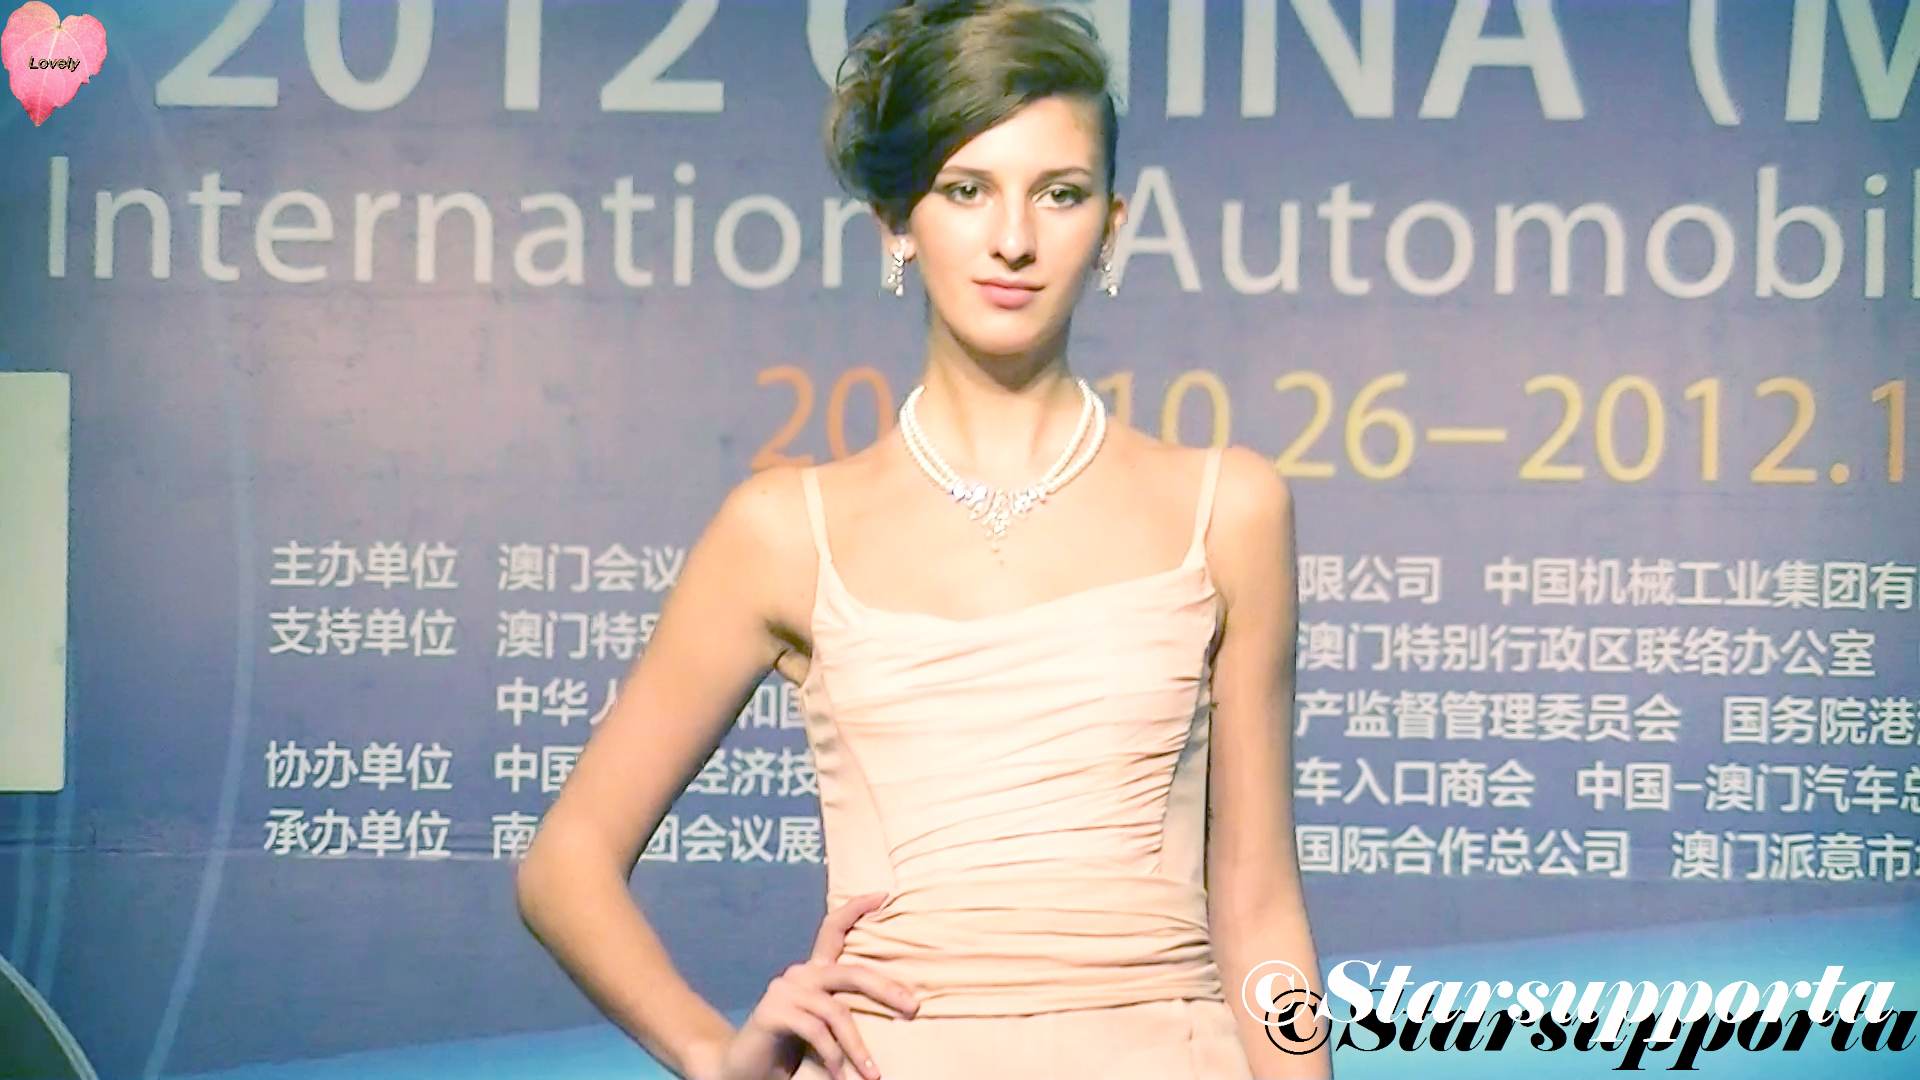 20121026 第二屆中國(澳門)國際汽車博覽會 - 主舞台: 汽車寶貝模特秀 1 @ 澳門斯尼斯人 (video)